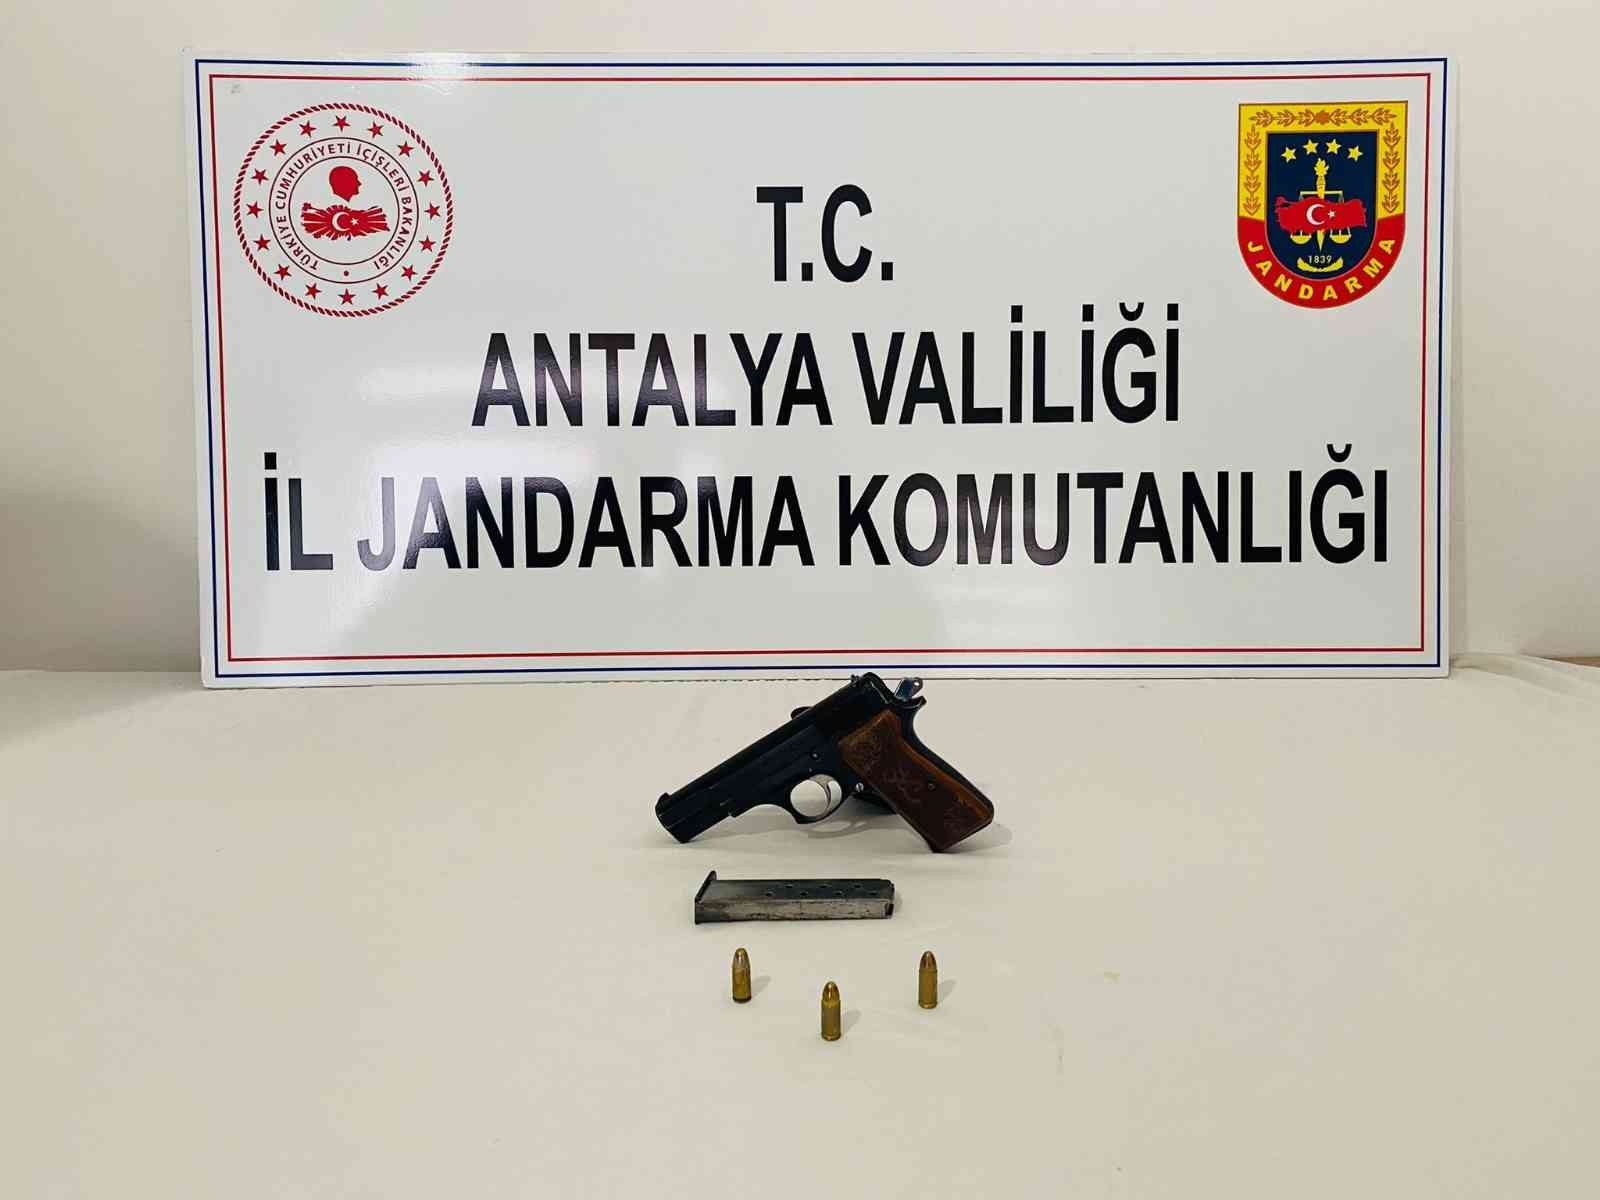 Şüpheli hareketlerde bulunan şahsın üzerinde tabanca bulundu #antalya